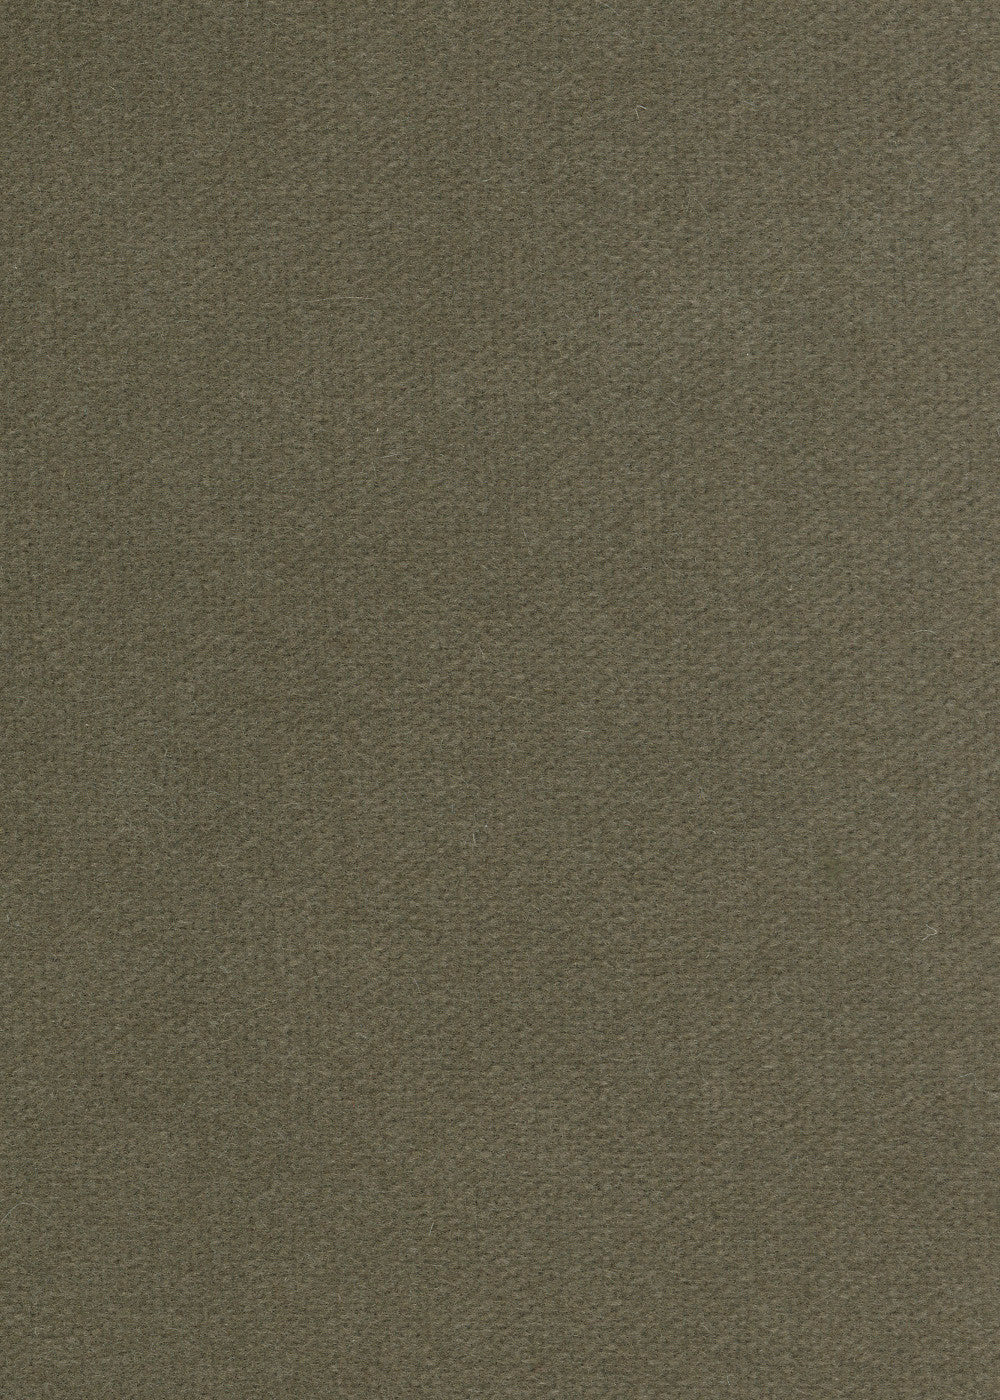 dark grey-green cashmere velvet fabric for upholstery